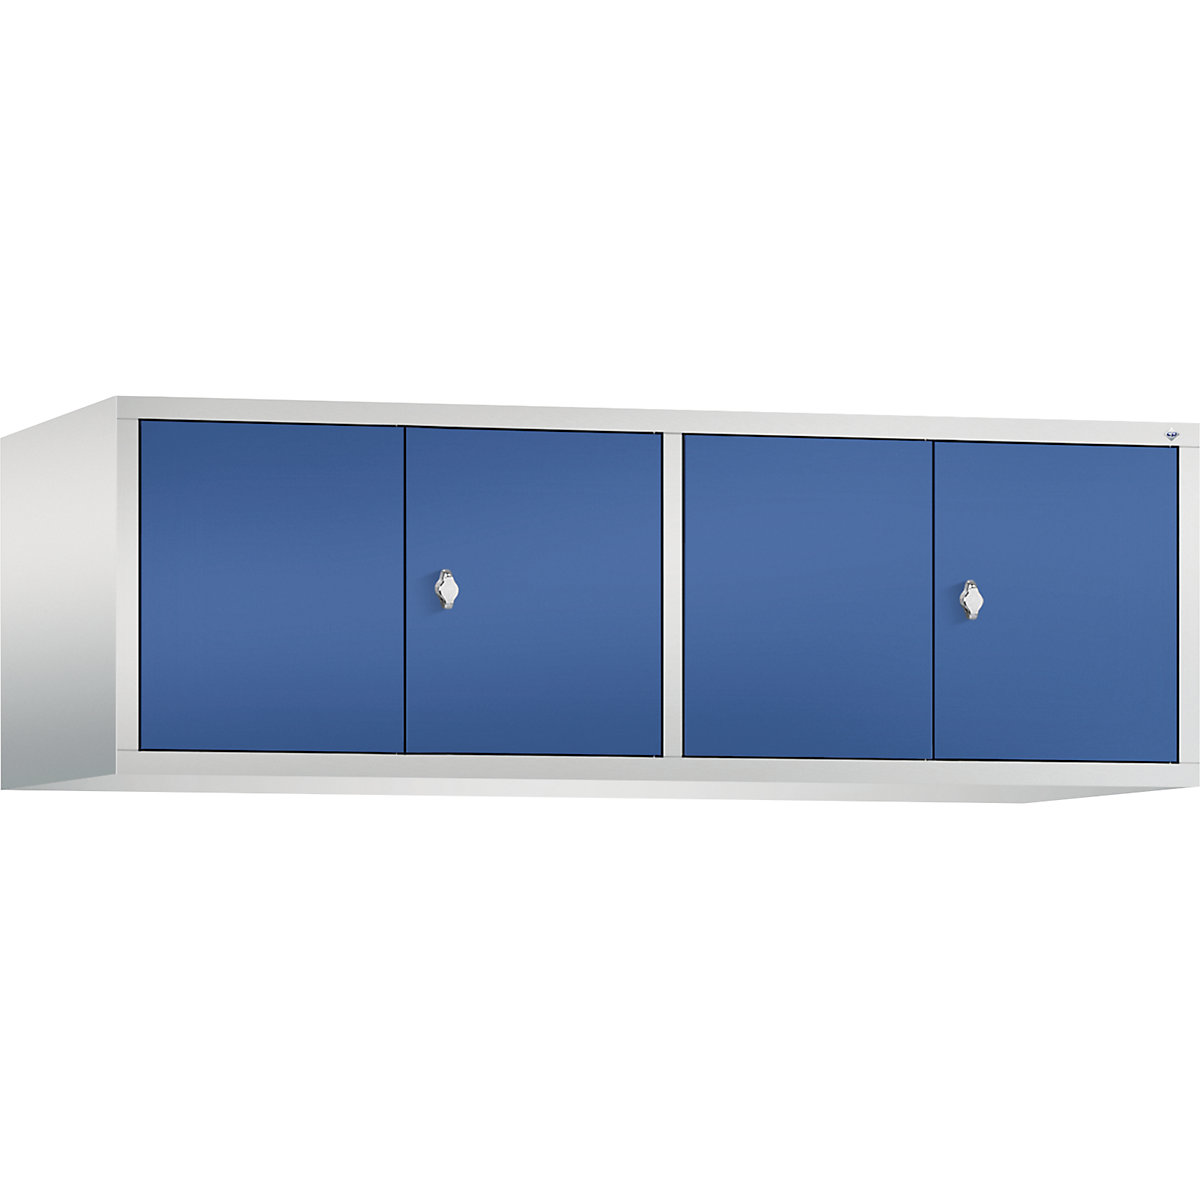 C+P – Altillo CLASSIC, puertas batientes que cierran al ras entre sí, 4 compartimentos, anchura de compartimento 400 mm, gris luminoso / azul genciana